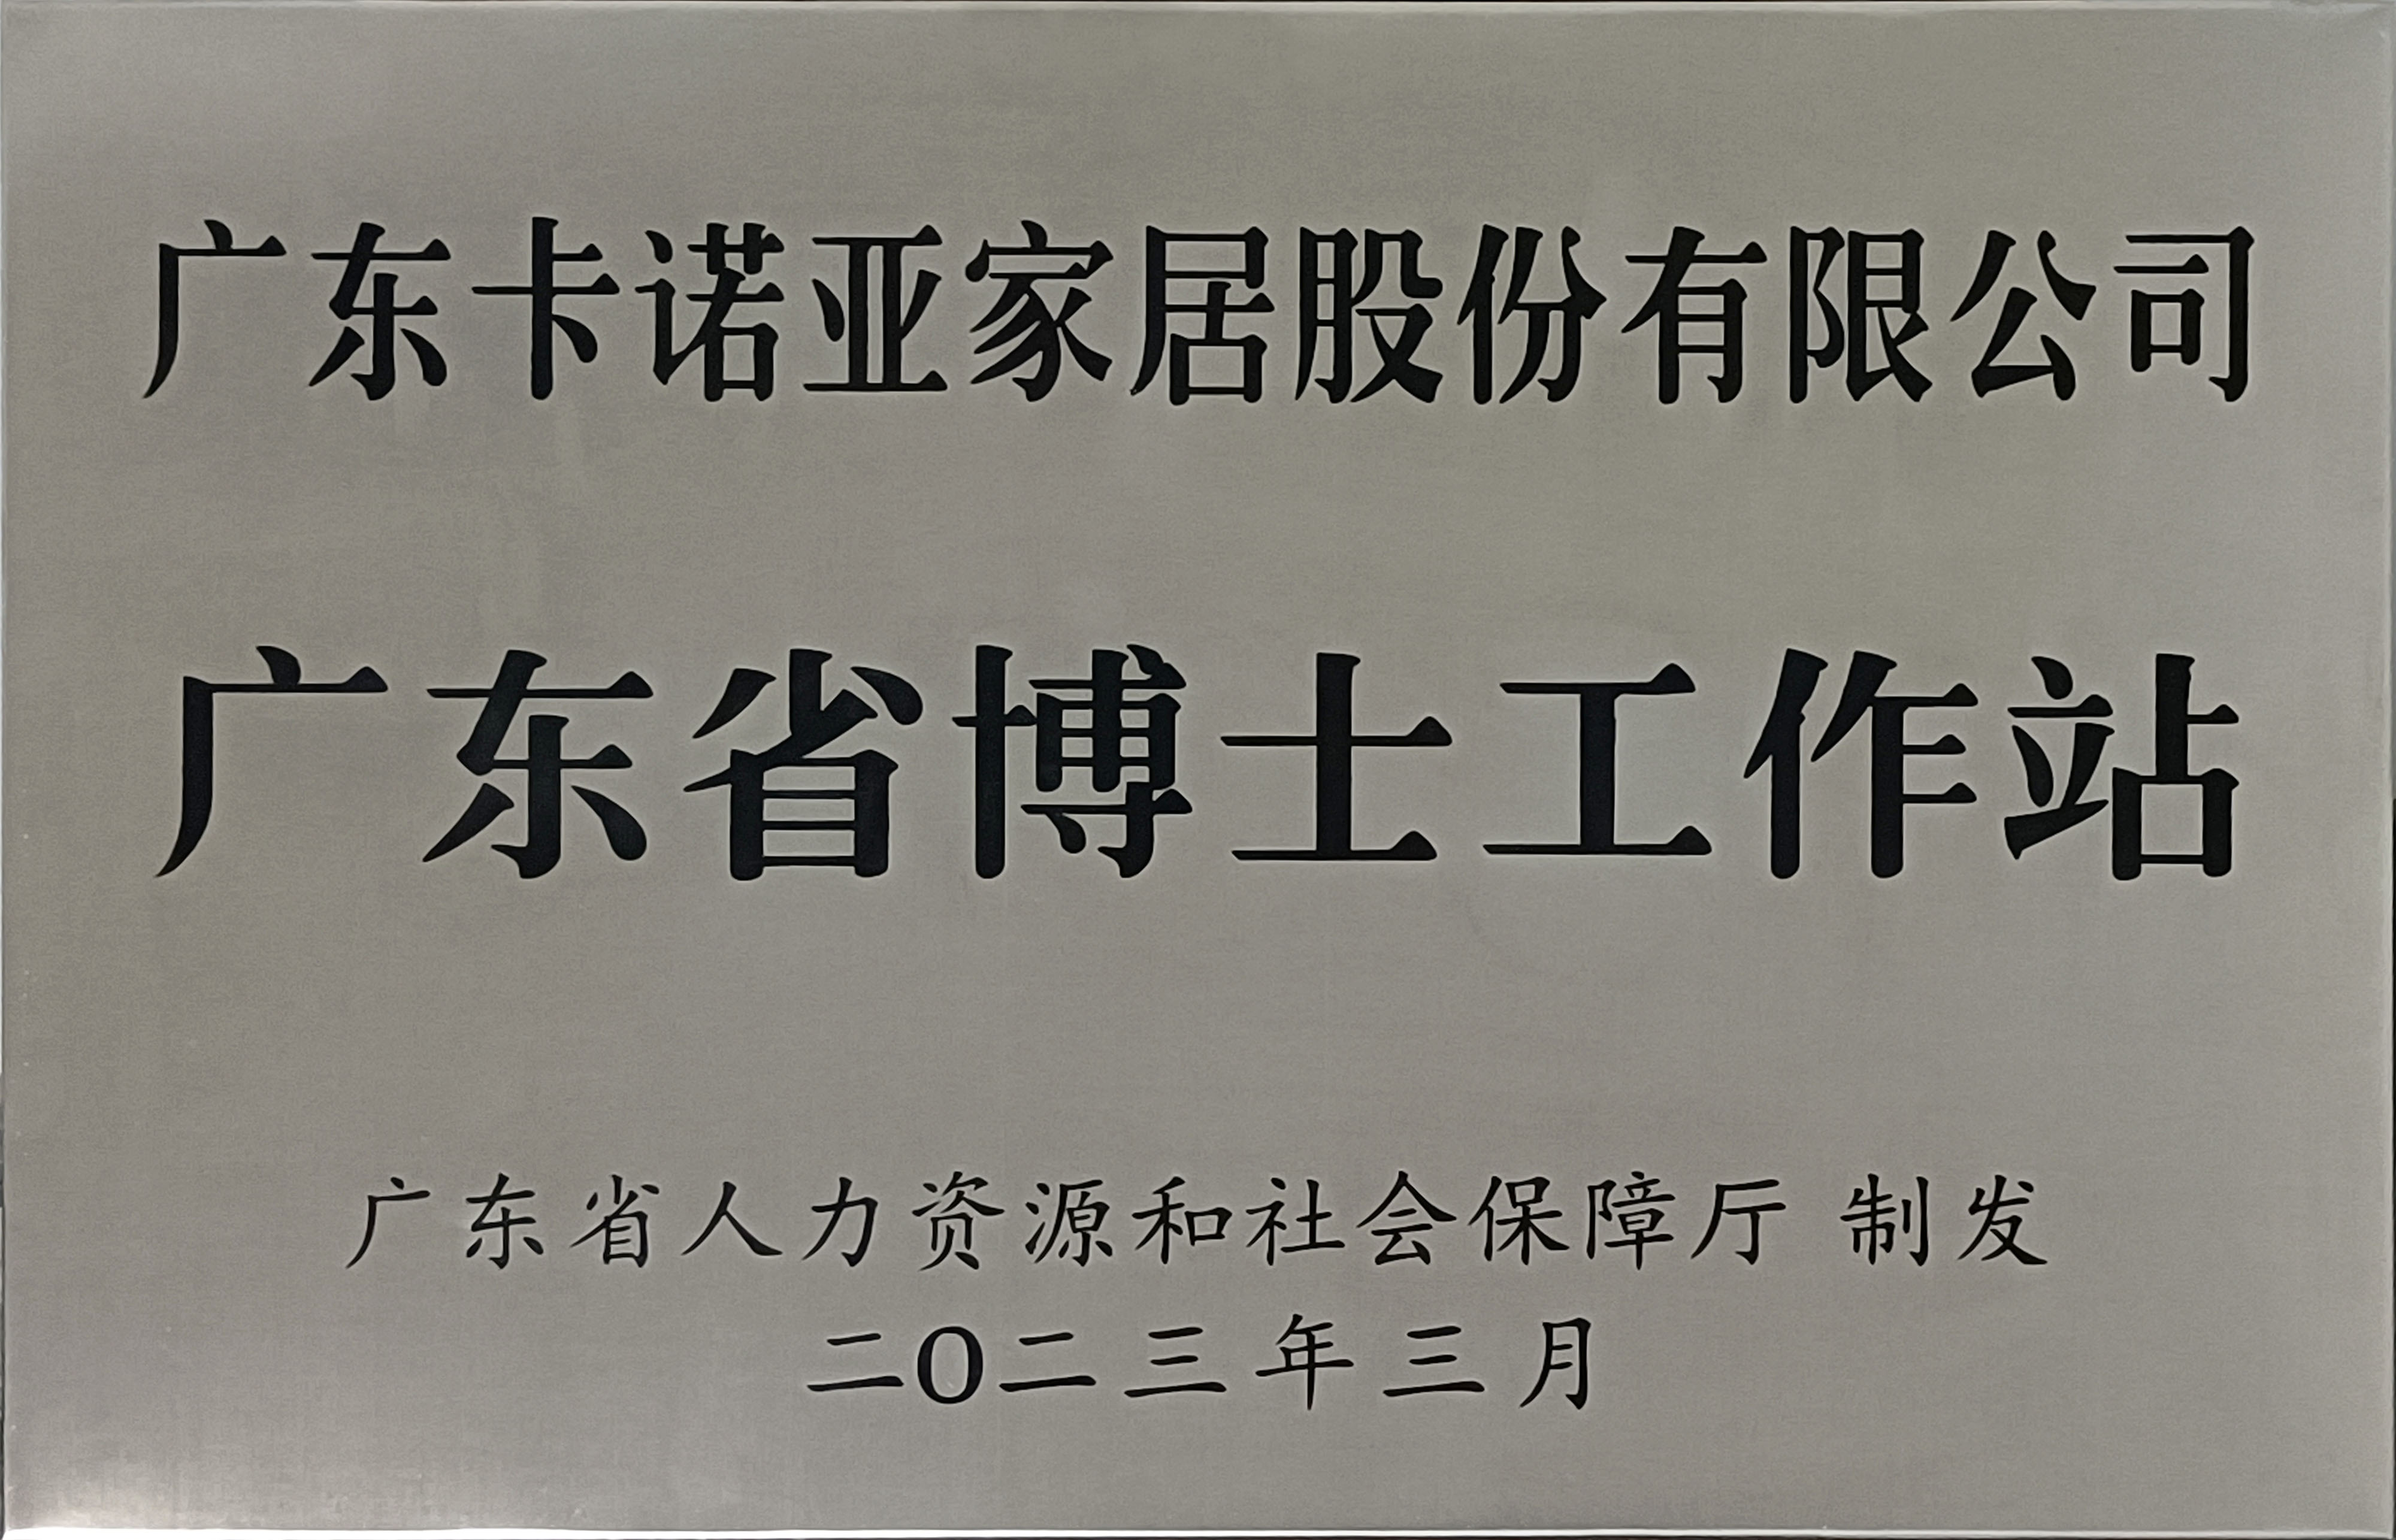 卡诺亚家居获批设立广东省博士工作站